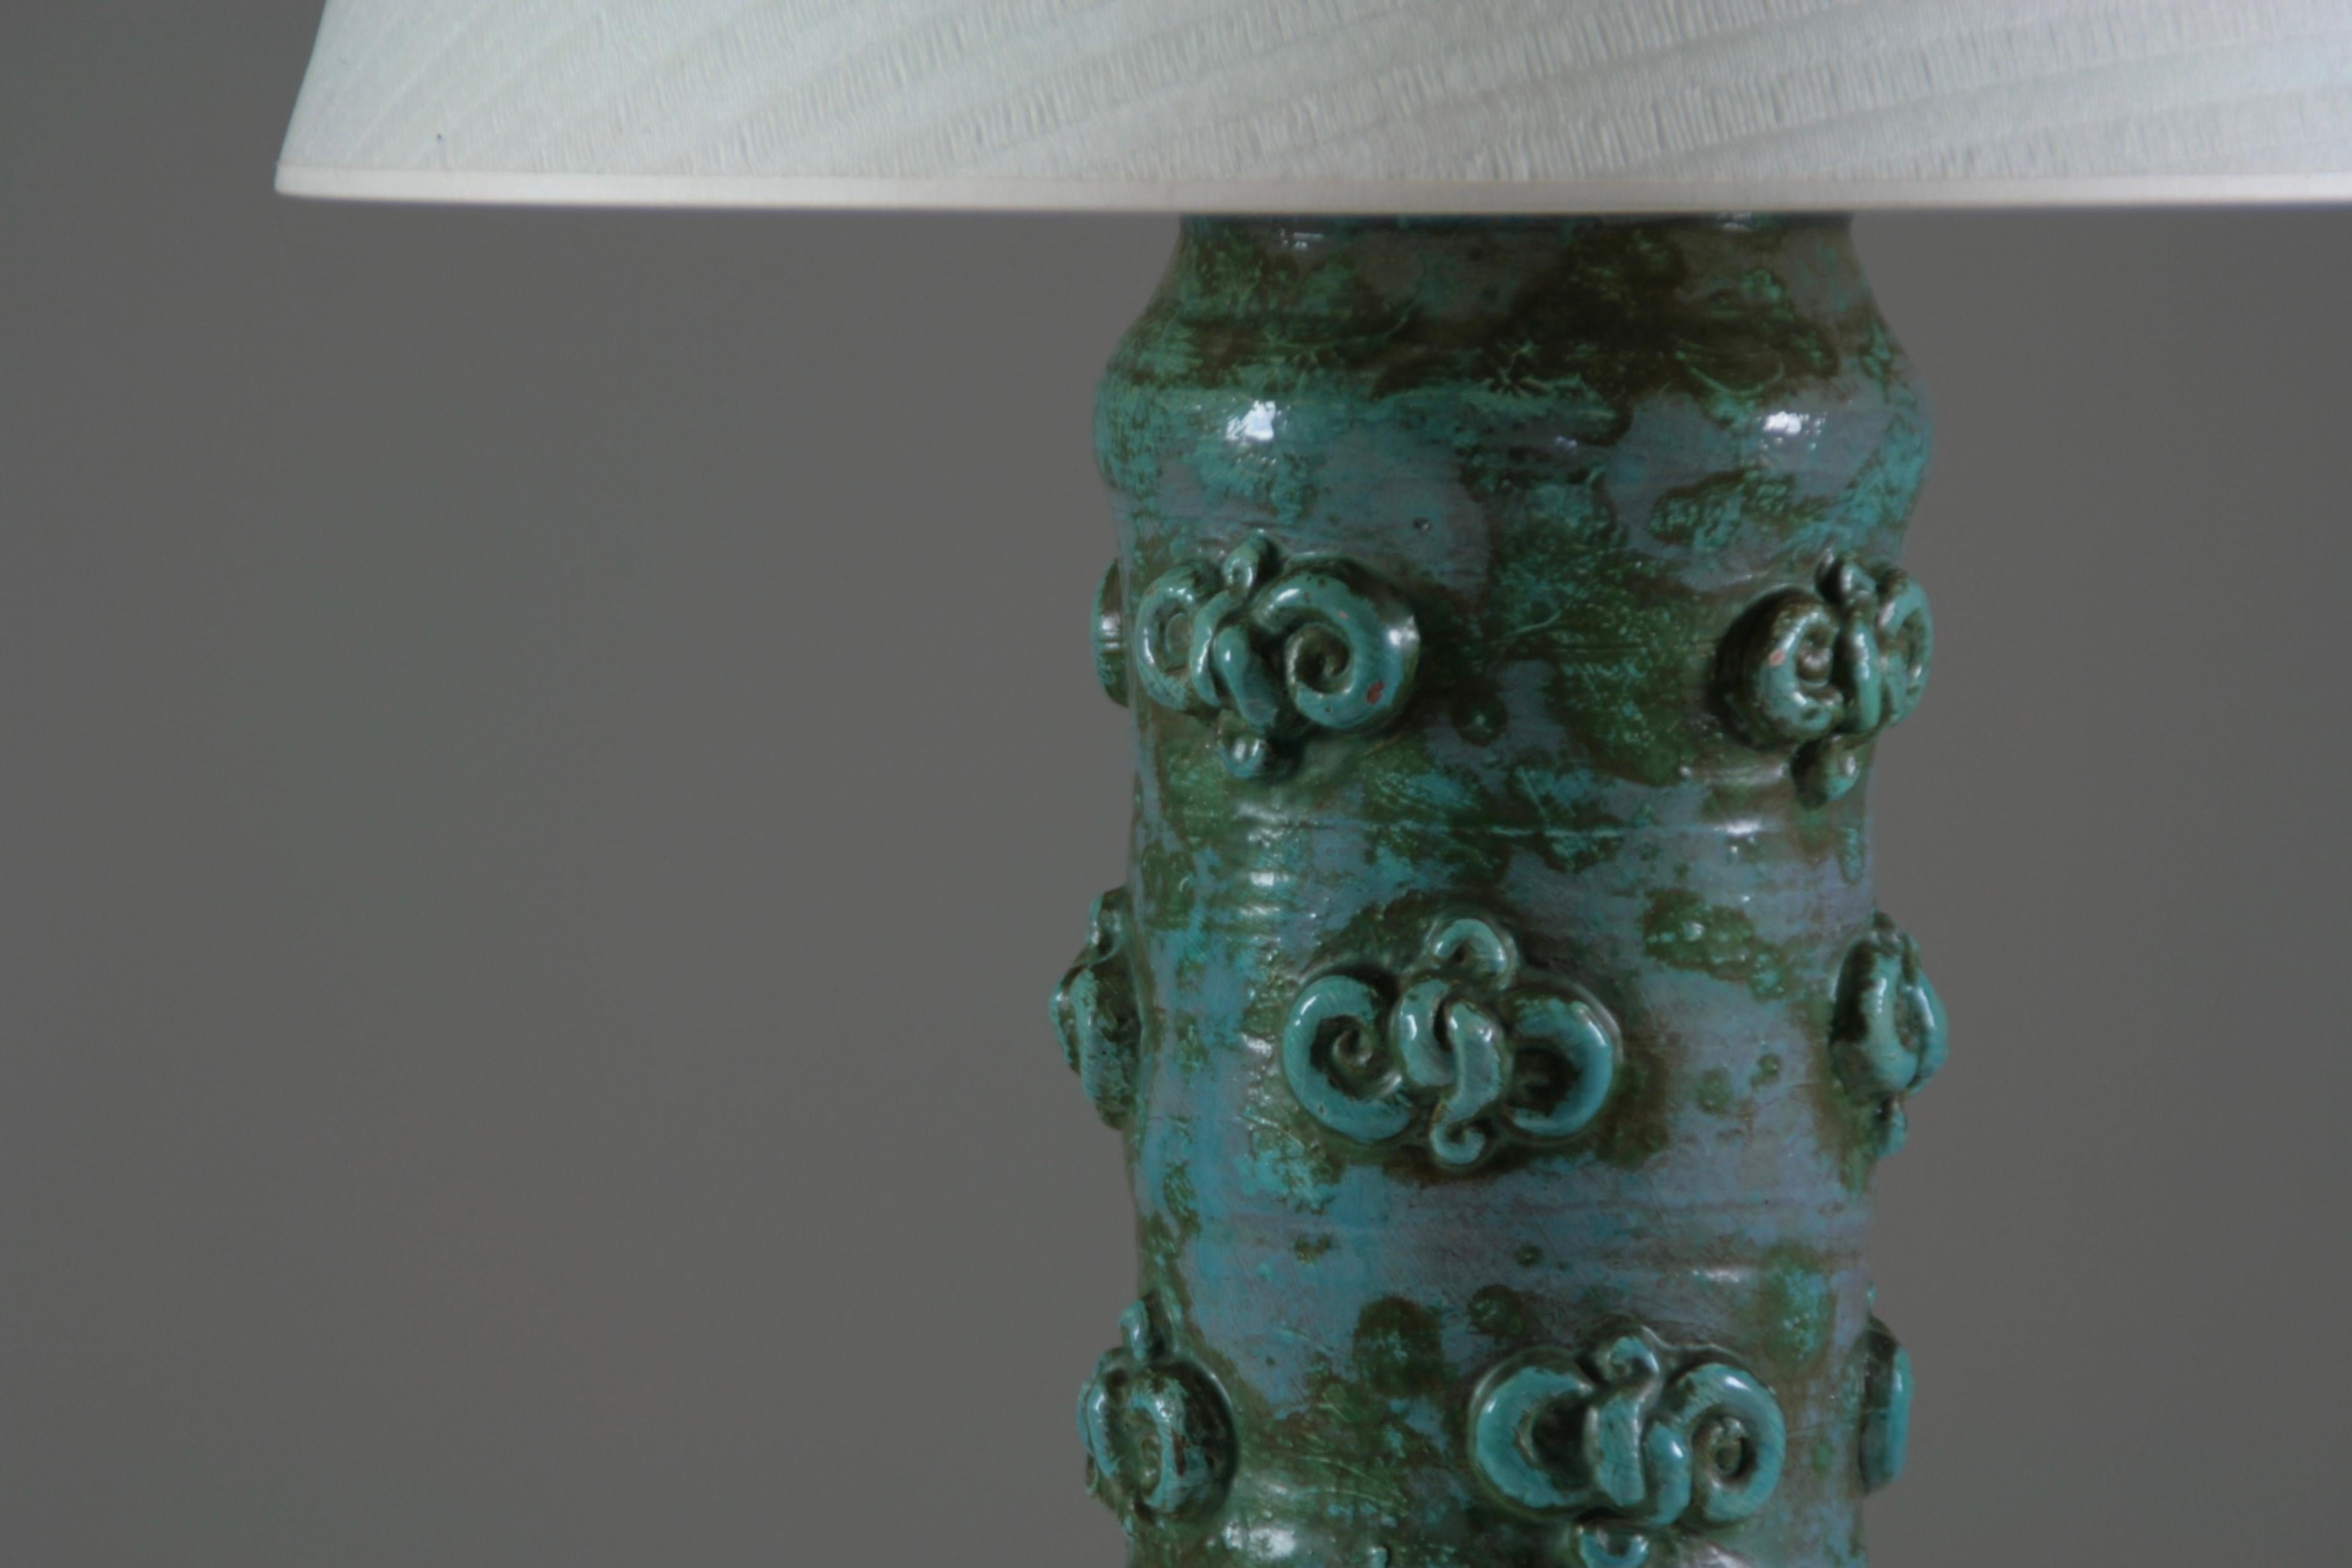 Lampe de table en poterie émaillée du céramiste français Jean Austruy, datant des années 1950. Belle décoration en relief sur l'ensemble des pieds. Belle condition vintage. Rares petits éclats visibles sur les photos. L'alimentation est entièrement